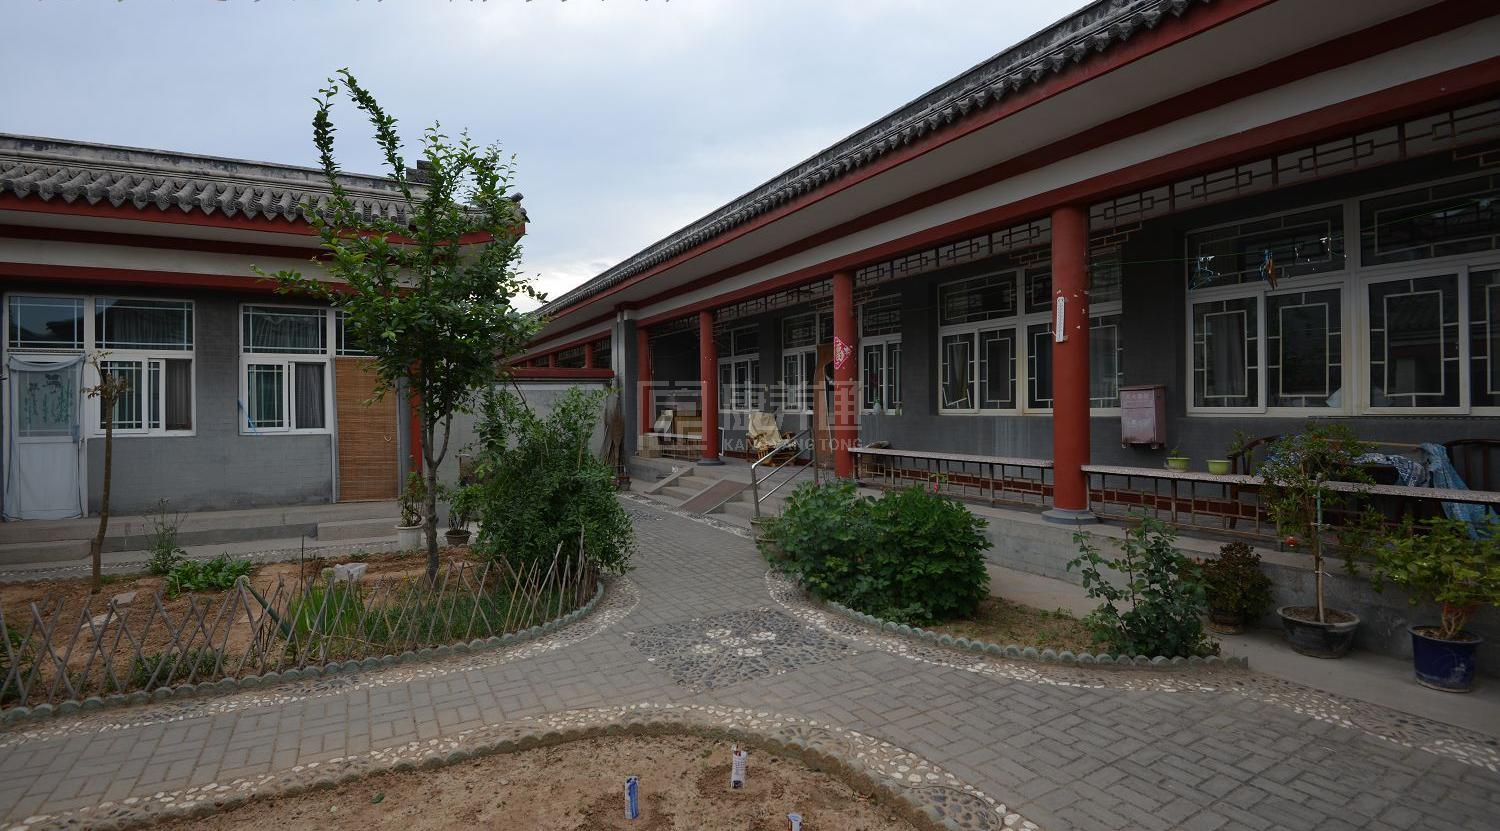 北京市昌平区十三陵镇温馨老年公寓服务项目图6让长者体面而尊严地生活